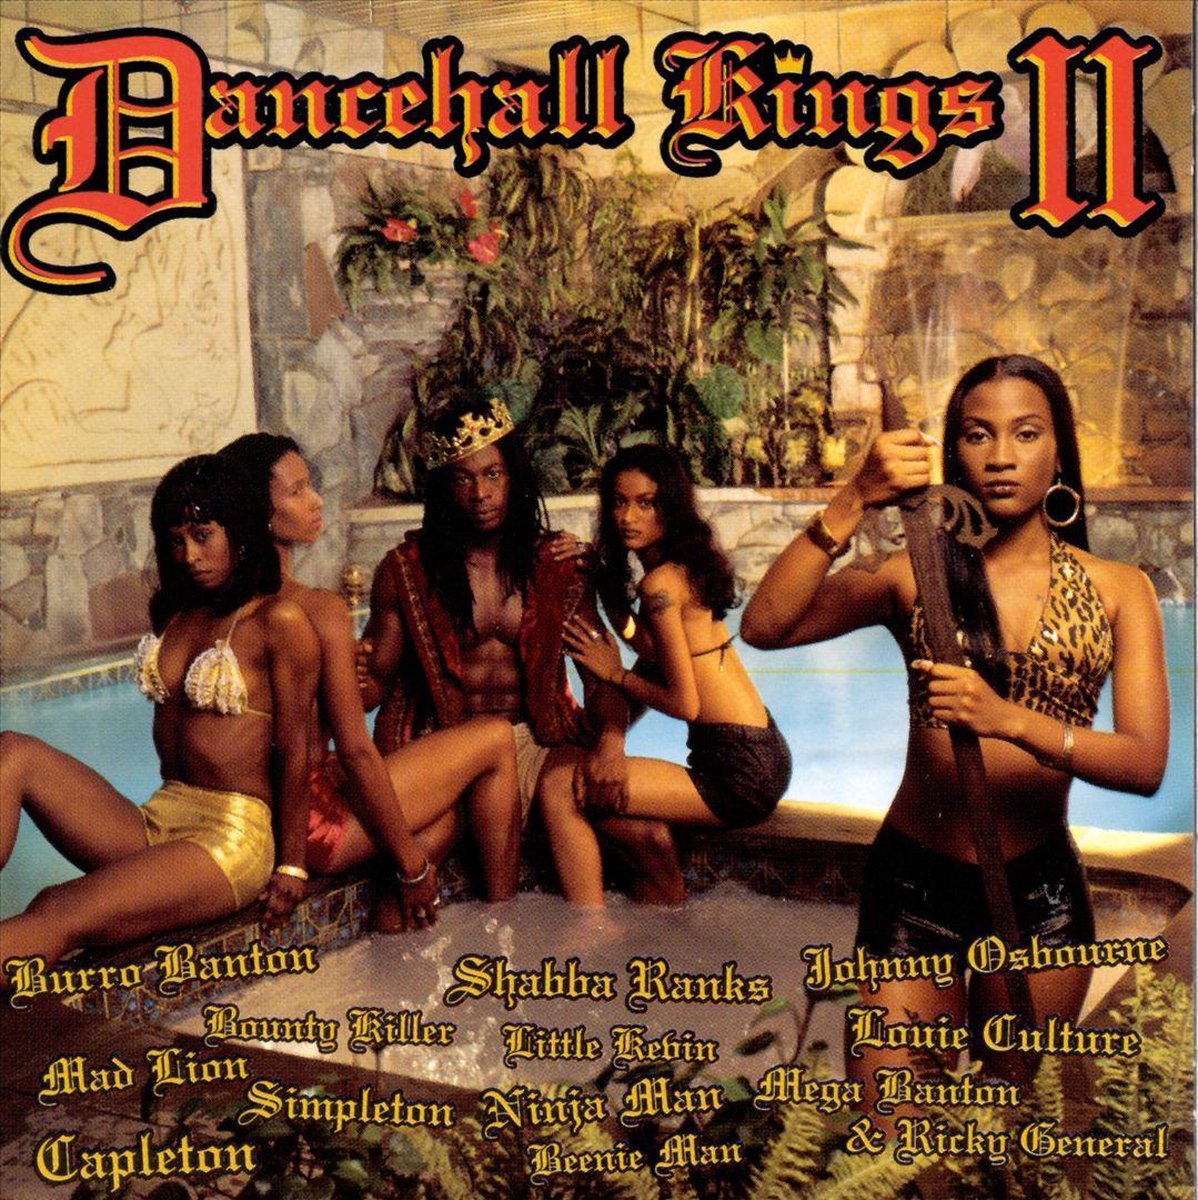 Dancehall Kings II - various artists